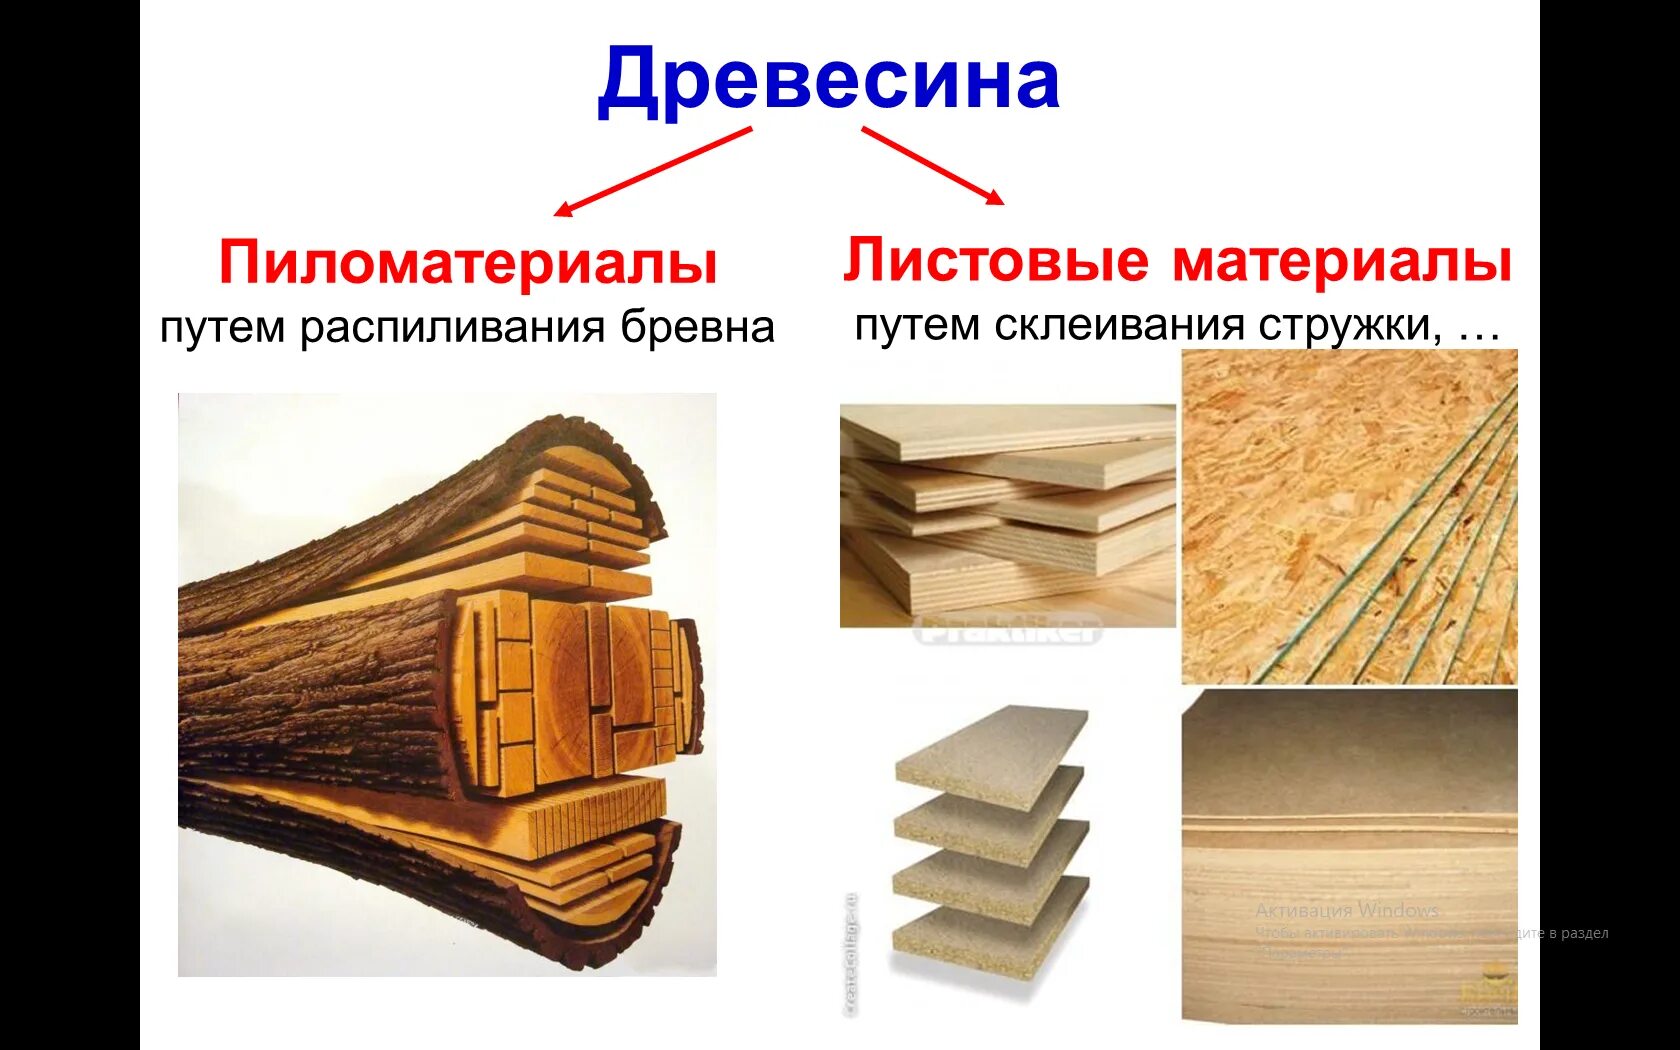 Дерево используют для изготовления. Древесина и древесные материалы. Пиломатериалы и древесные материалы. Пиломатериалы из древесины. Материалы из дерева для строительства.